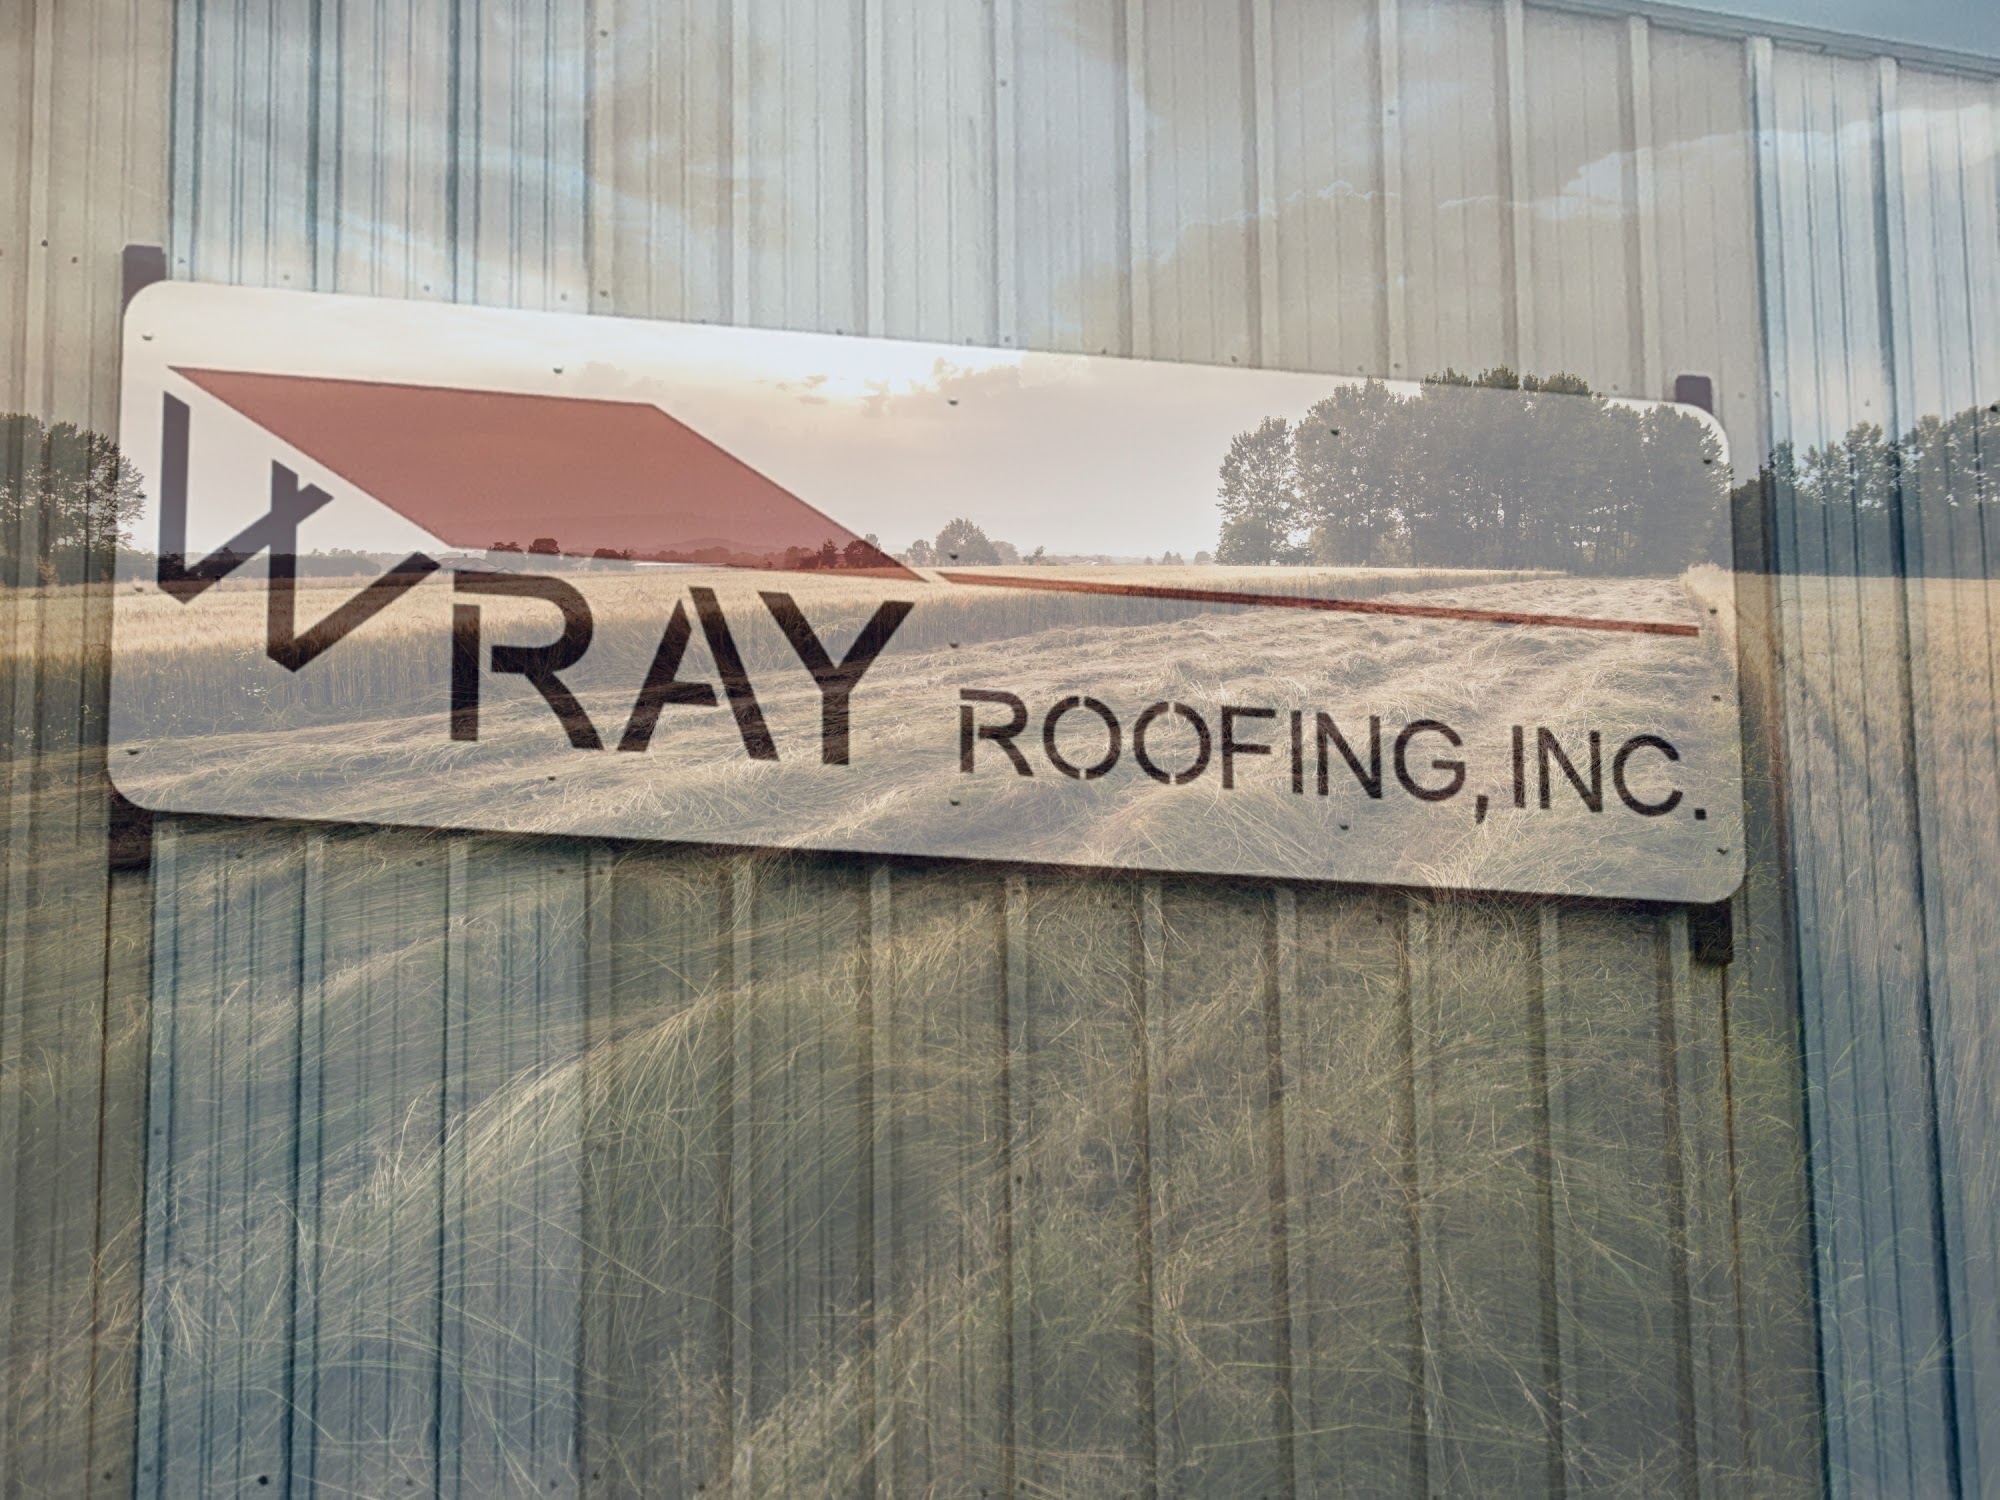 Wray Roofing, Inc 1521 NW 36th St, Newton Kansas 67114